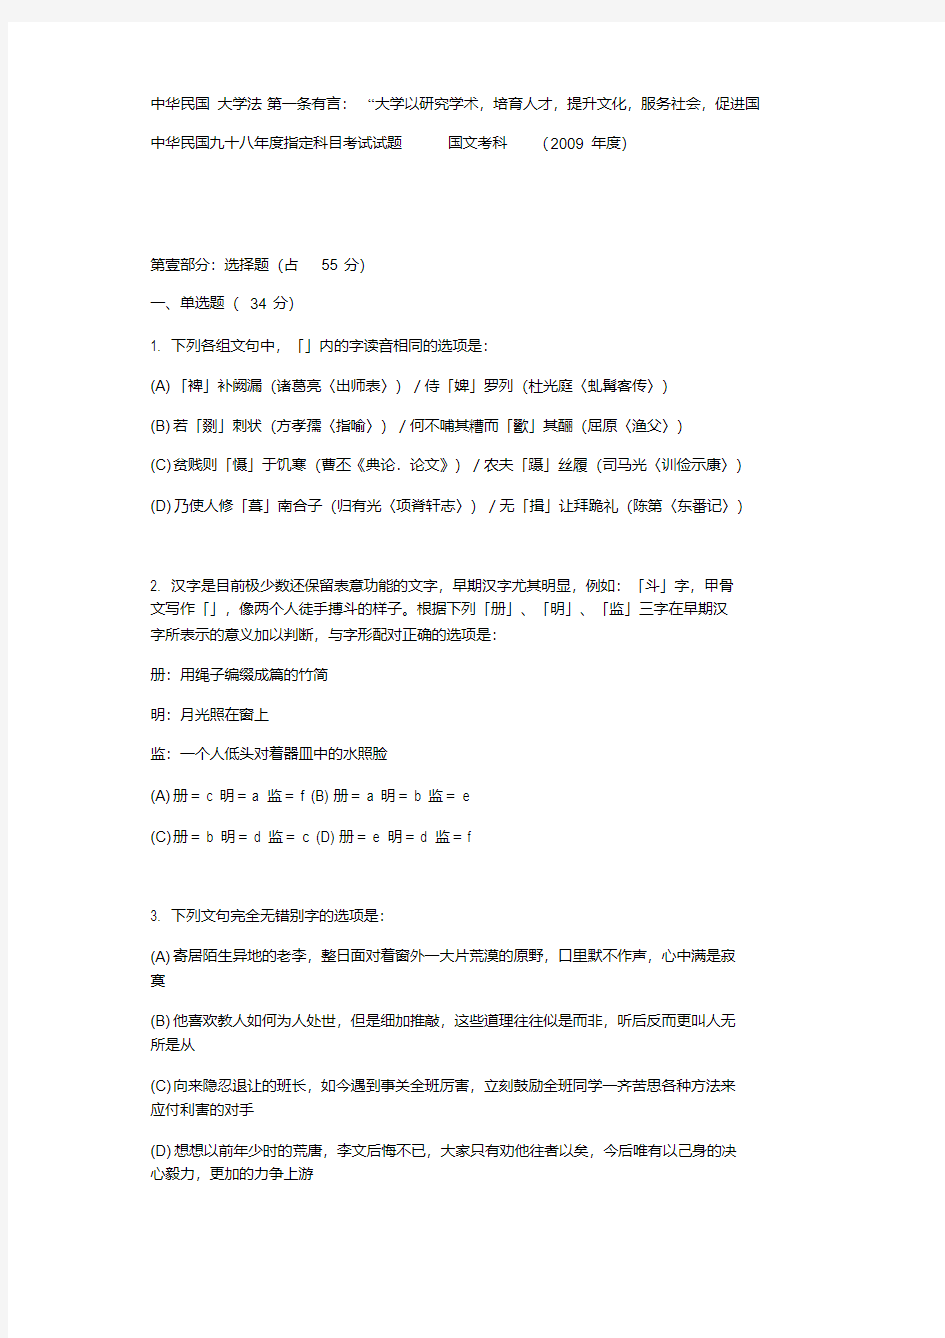 台湾高考语文试卷(2009年).pdf